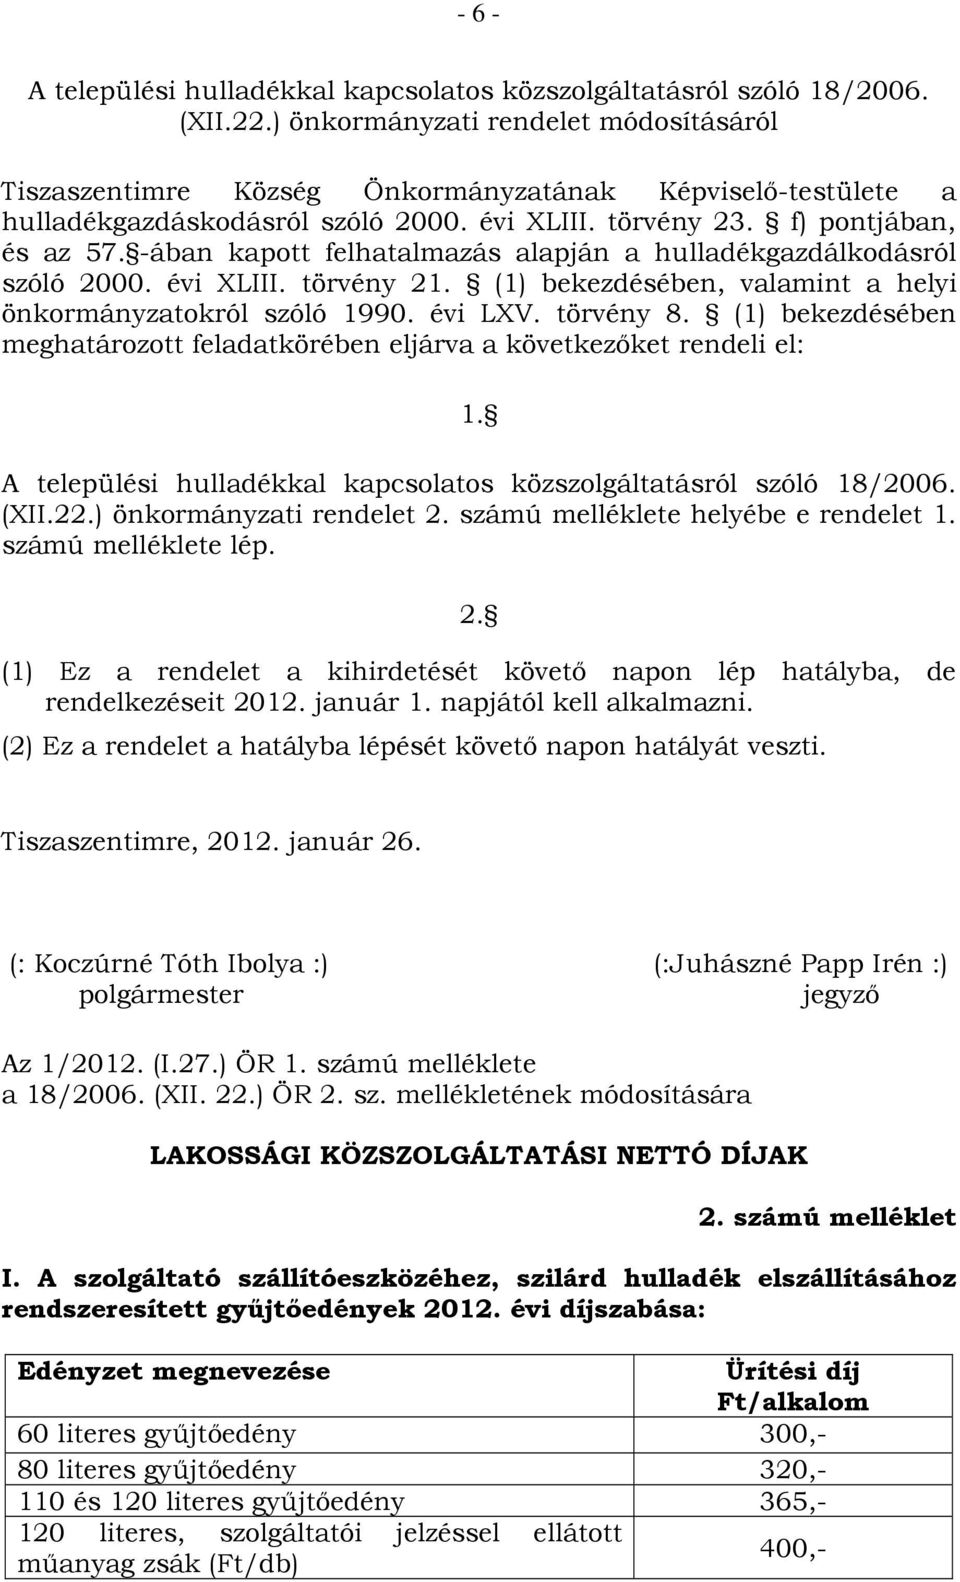 -ában kapott felhatalmazás alapján a hulladékgazdálkodásról szóló 2000. évi XLIII. törvény 21. (1) bekezdésében, valamint a helyi önkormányzatokról szóló 1990. évi LXV. törvény 8.